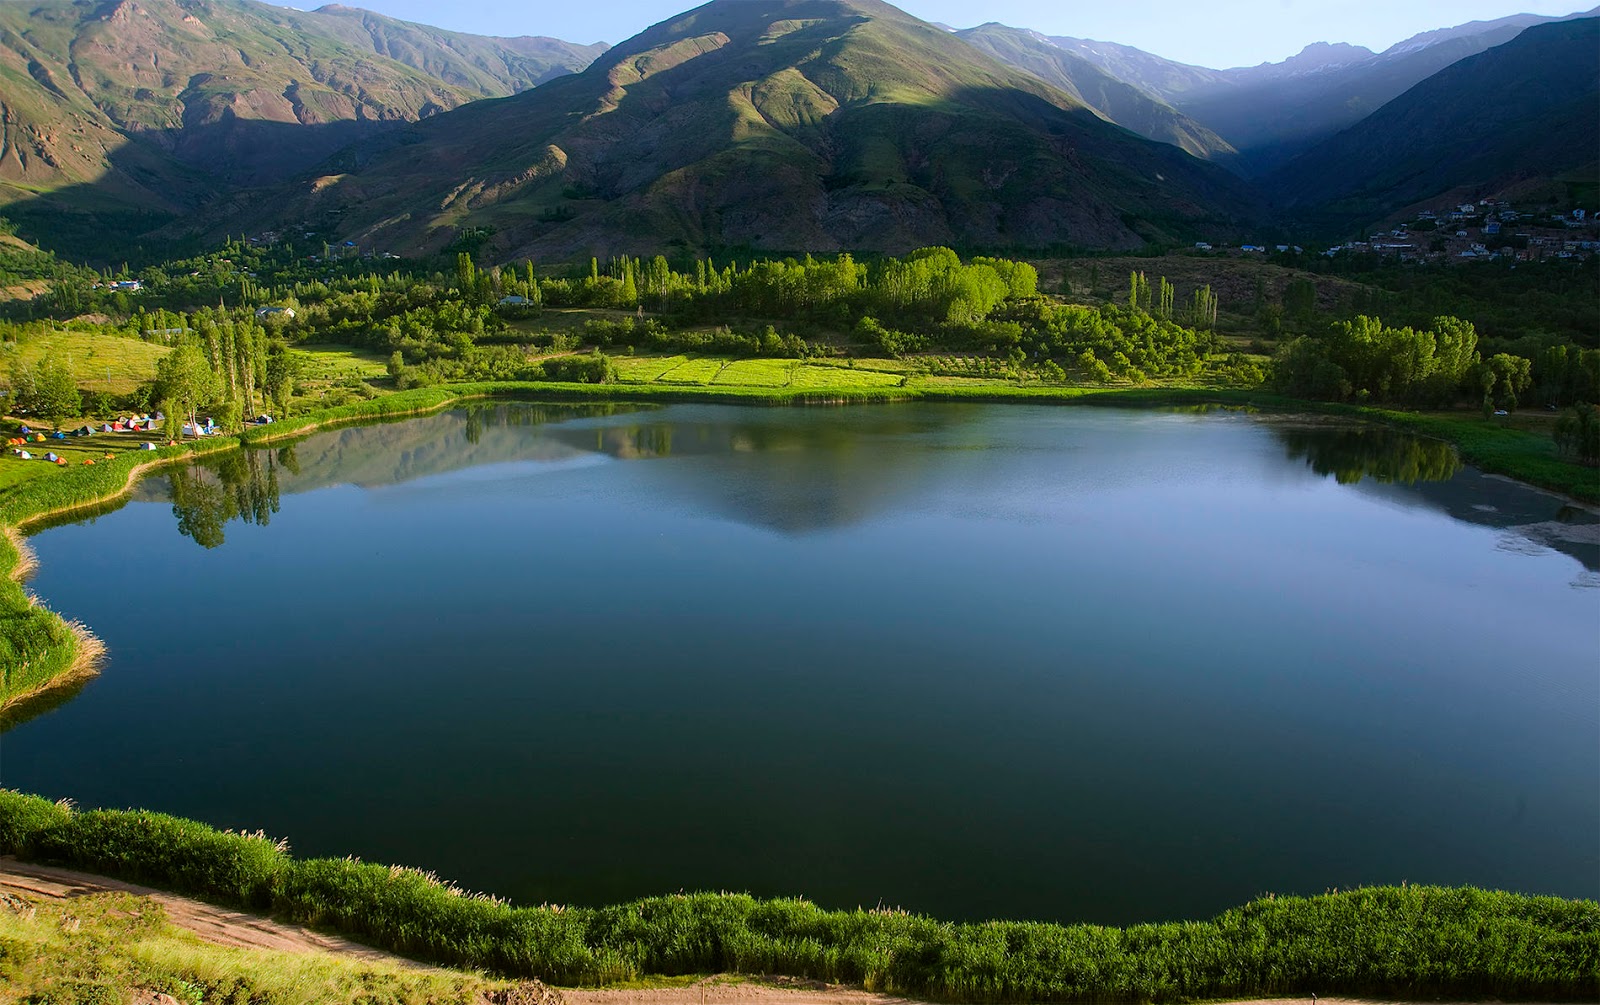 دریاچه اوان قزوین - عروس دریاچه های ایران